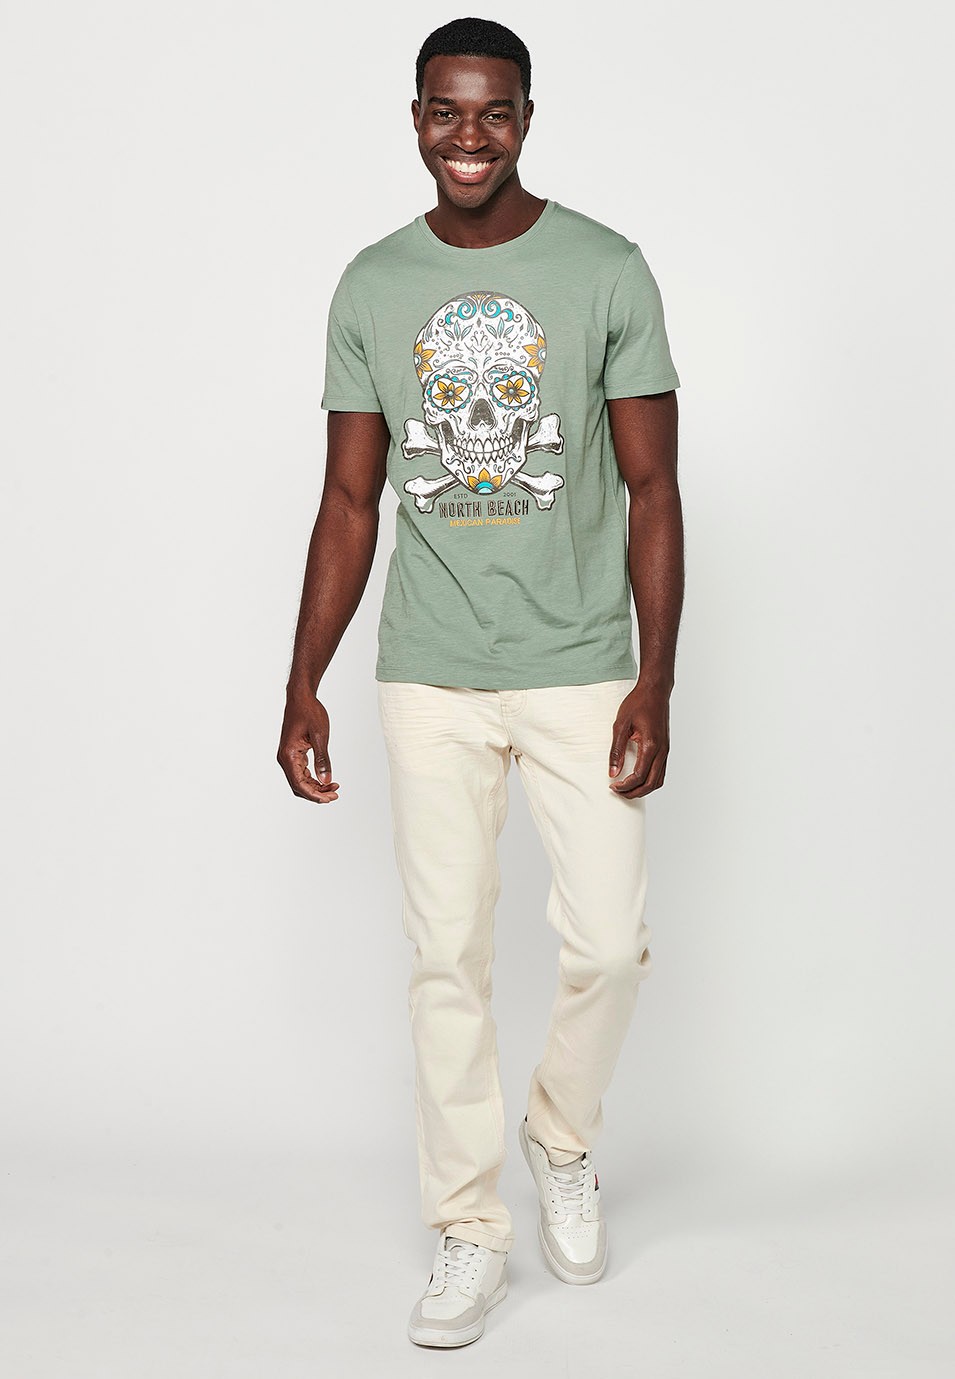 Herren-Kurzarm-T-Shirt aus Baumwolle mit Rundhalsausschnitt in Khaki-Farbe und Print vorne 6